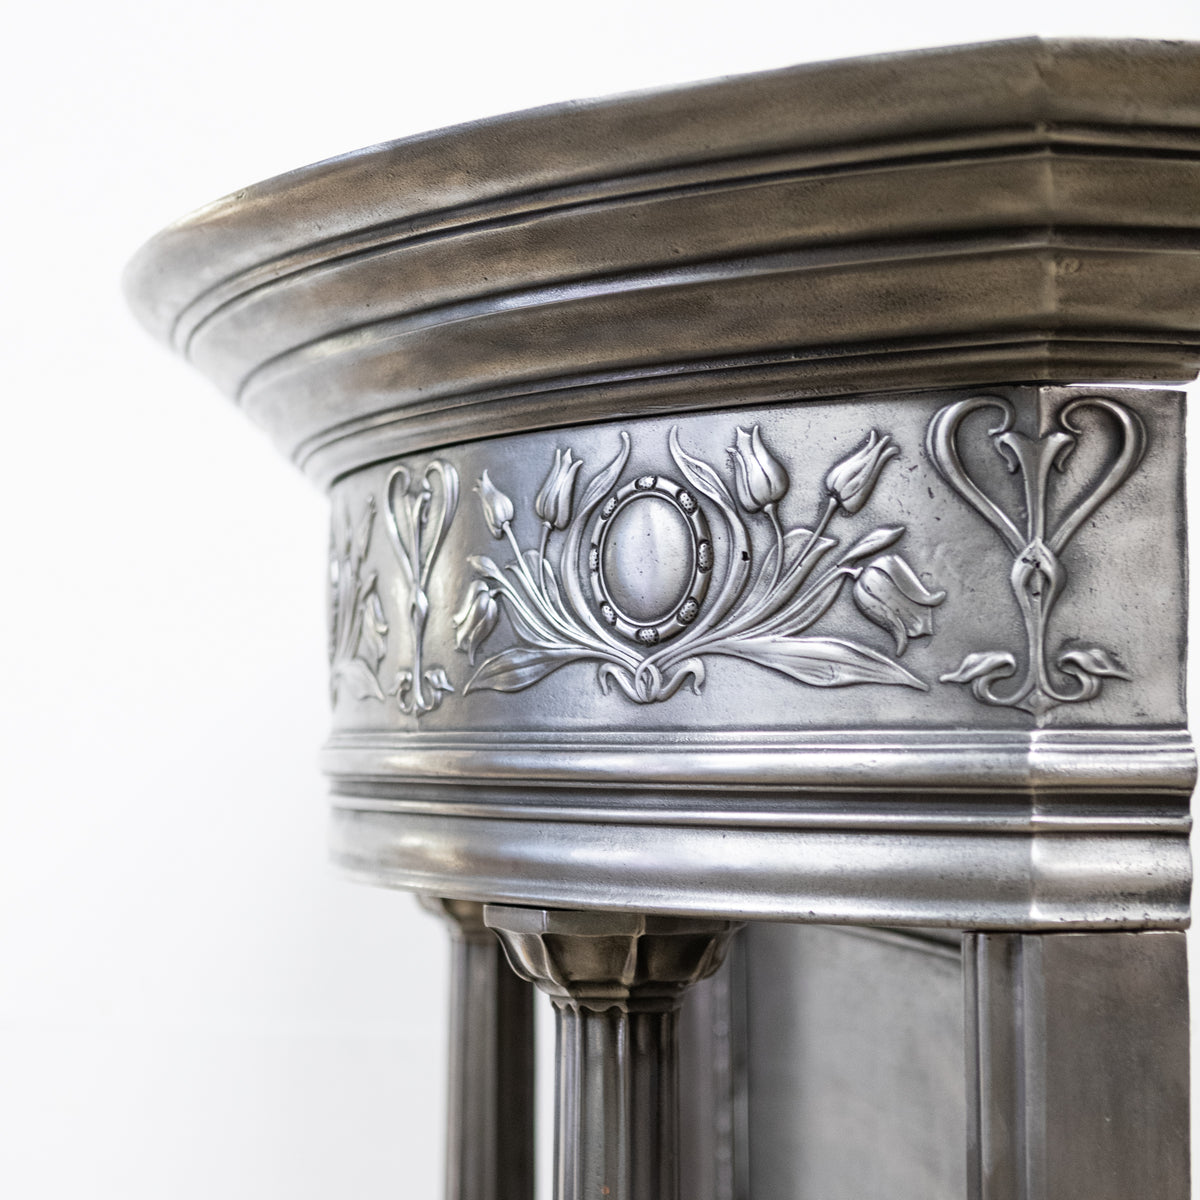 Rare Antique Art Nouveau Chimneypiece with Columns | The Architectural Forum